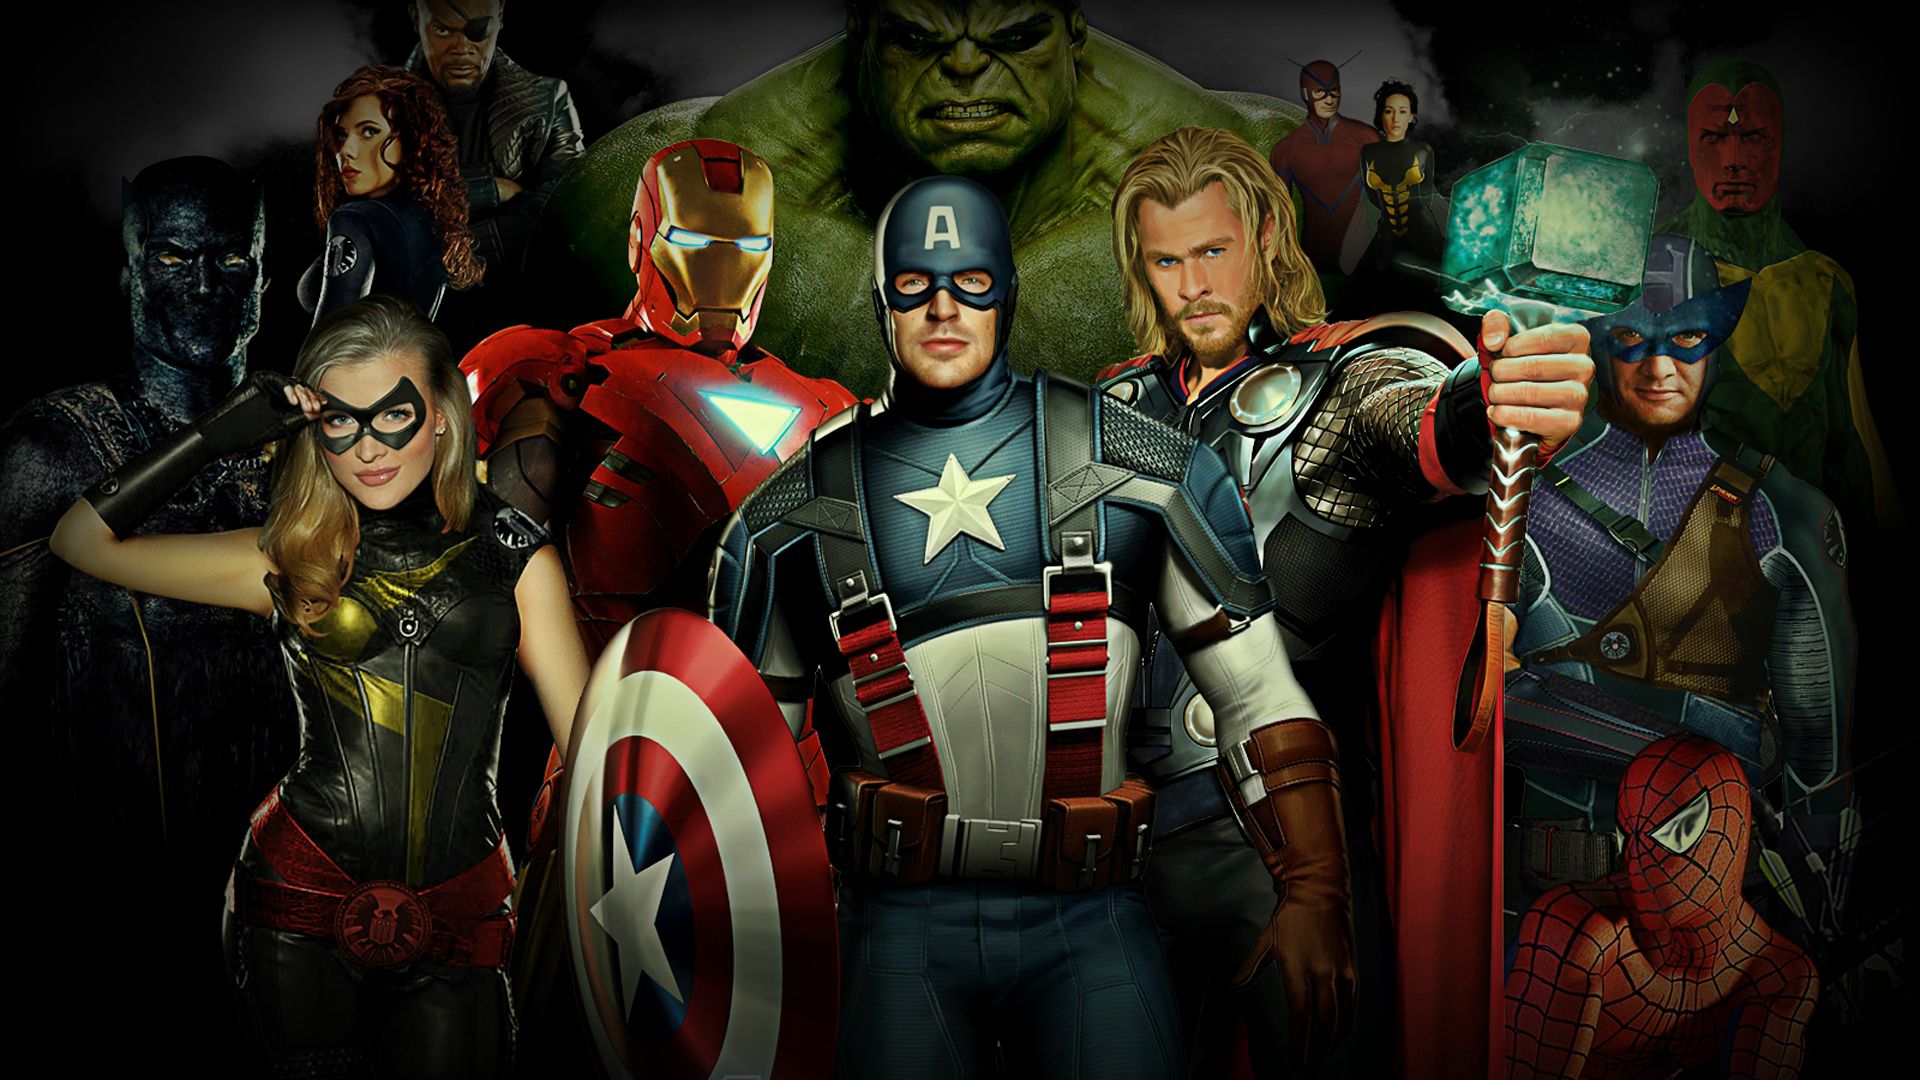 Marvel Heroes Wallpaper HD